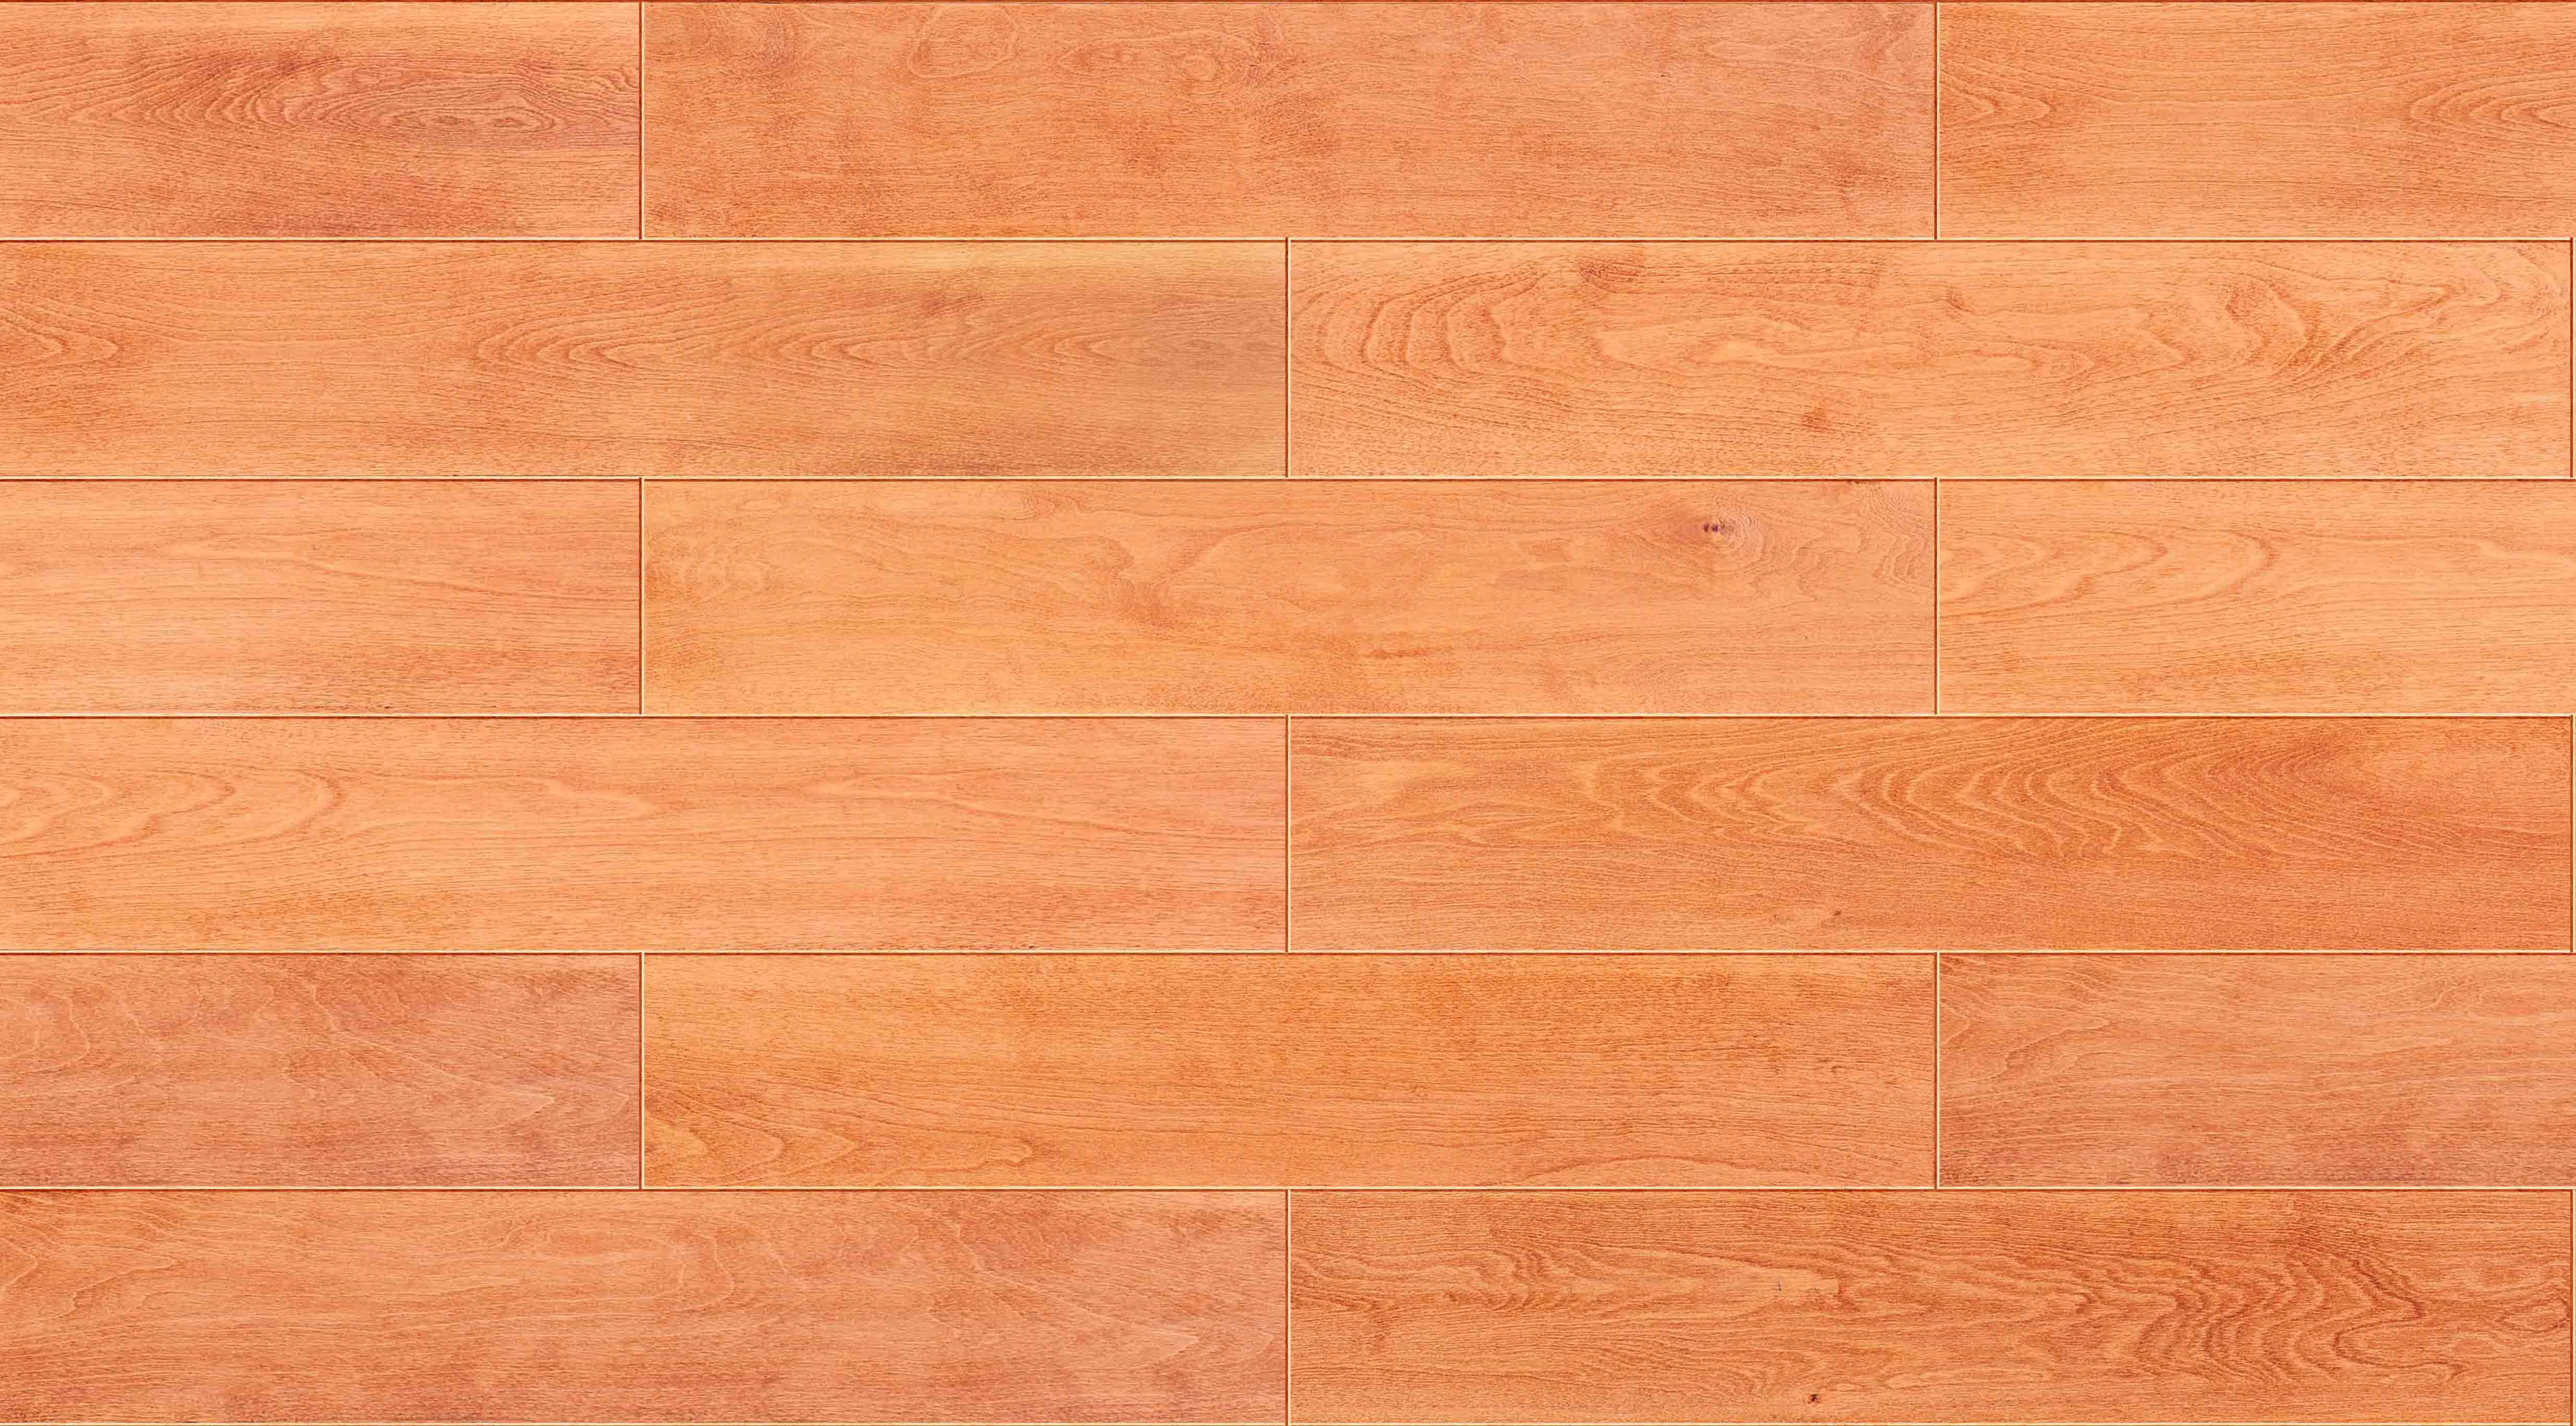 欧模网 3d贴图下载  木纹木材3d贴图下载  木地板3d贴图下载  地板 id